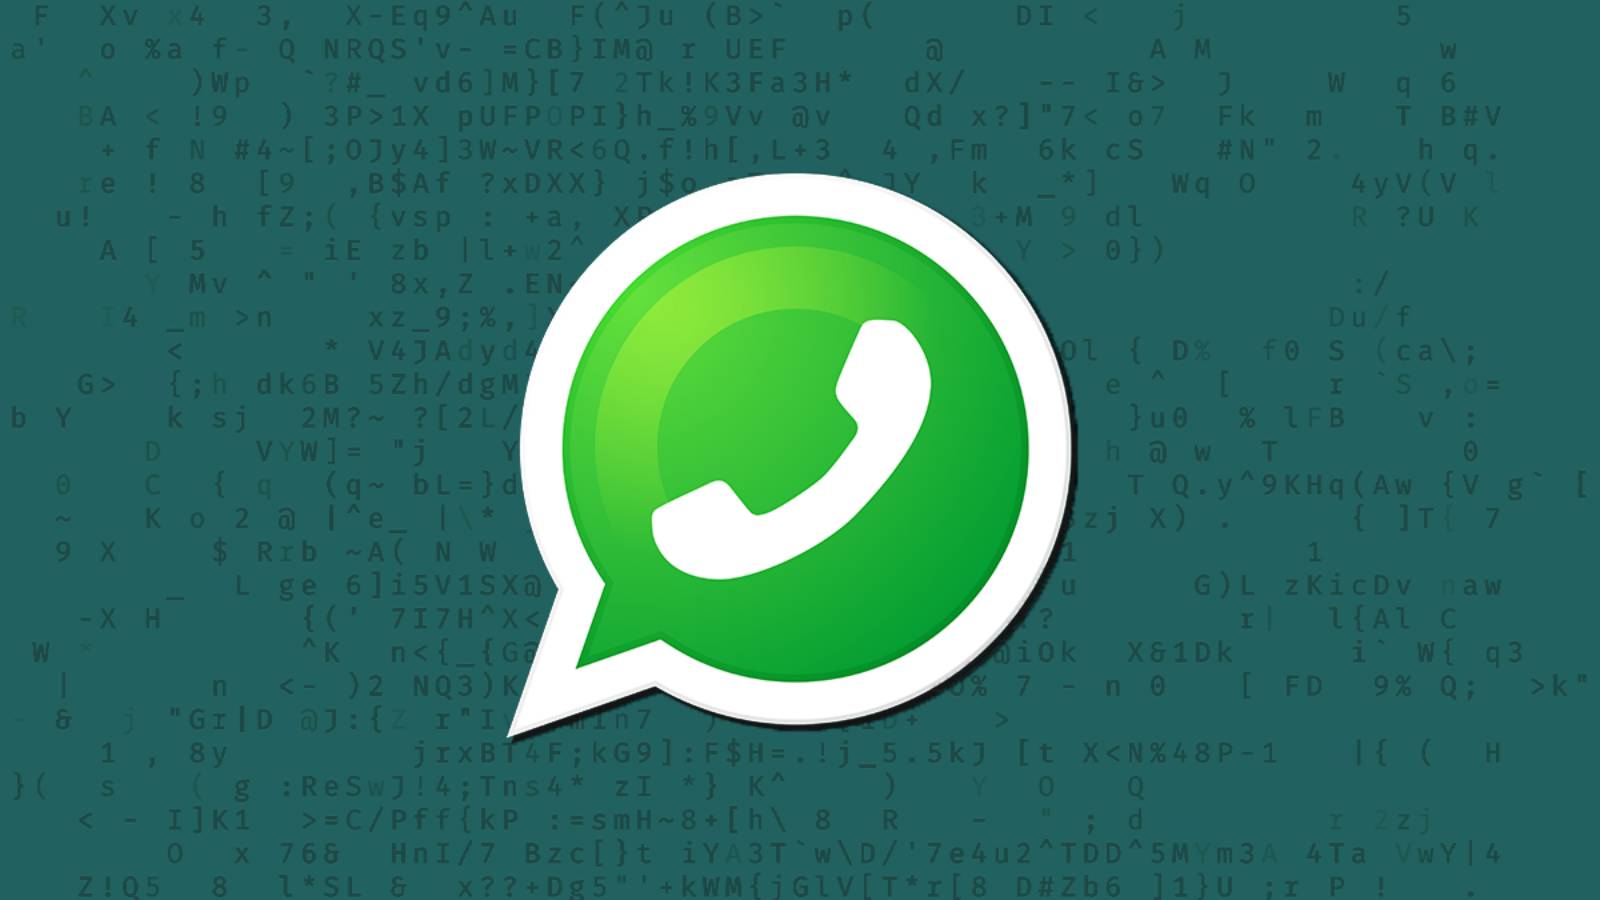 WhatsApp naprawia wiele wiadomości